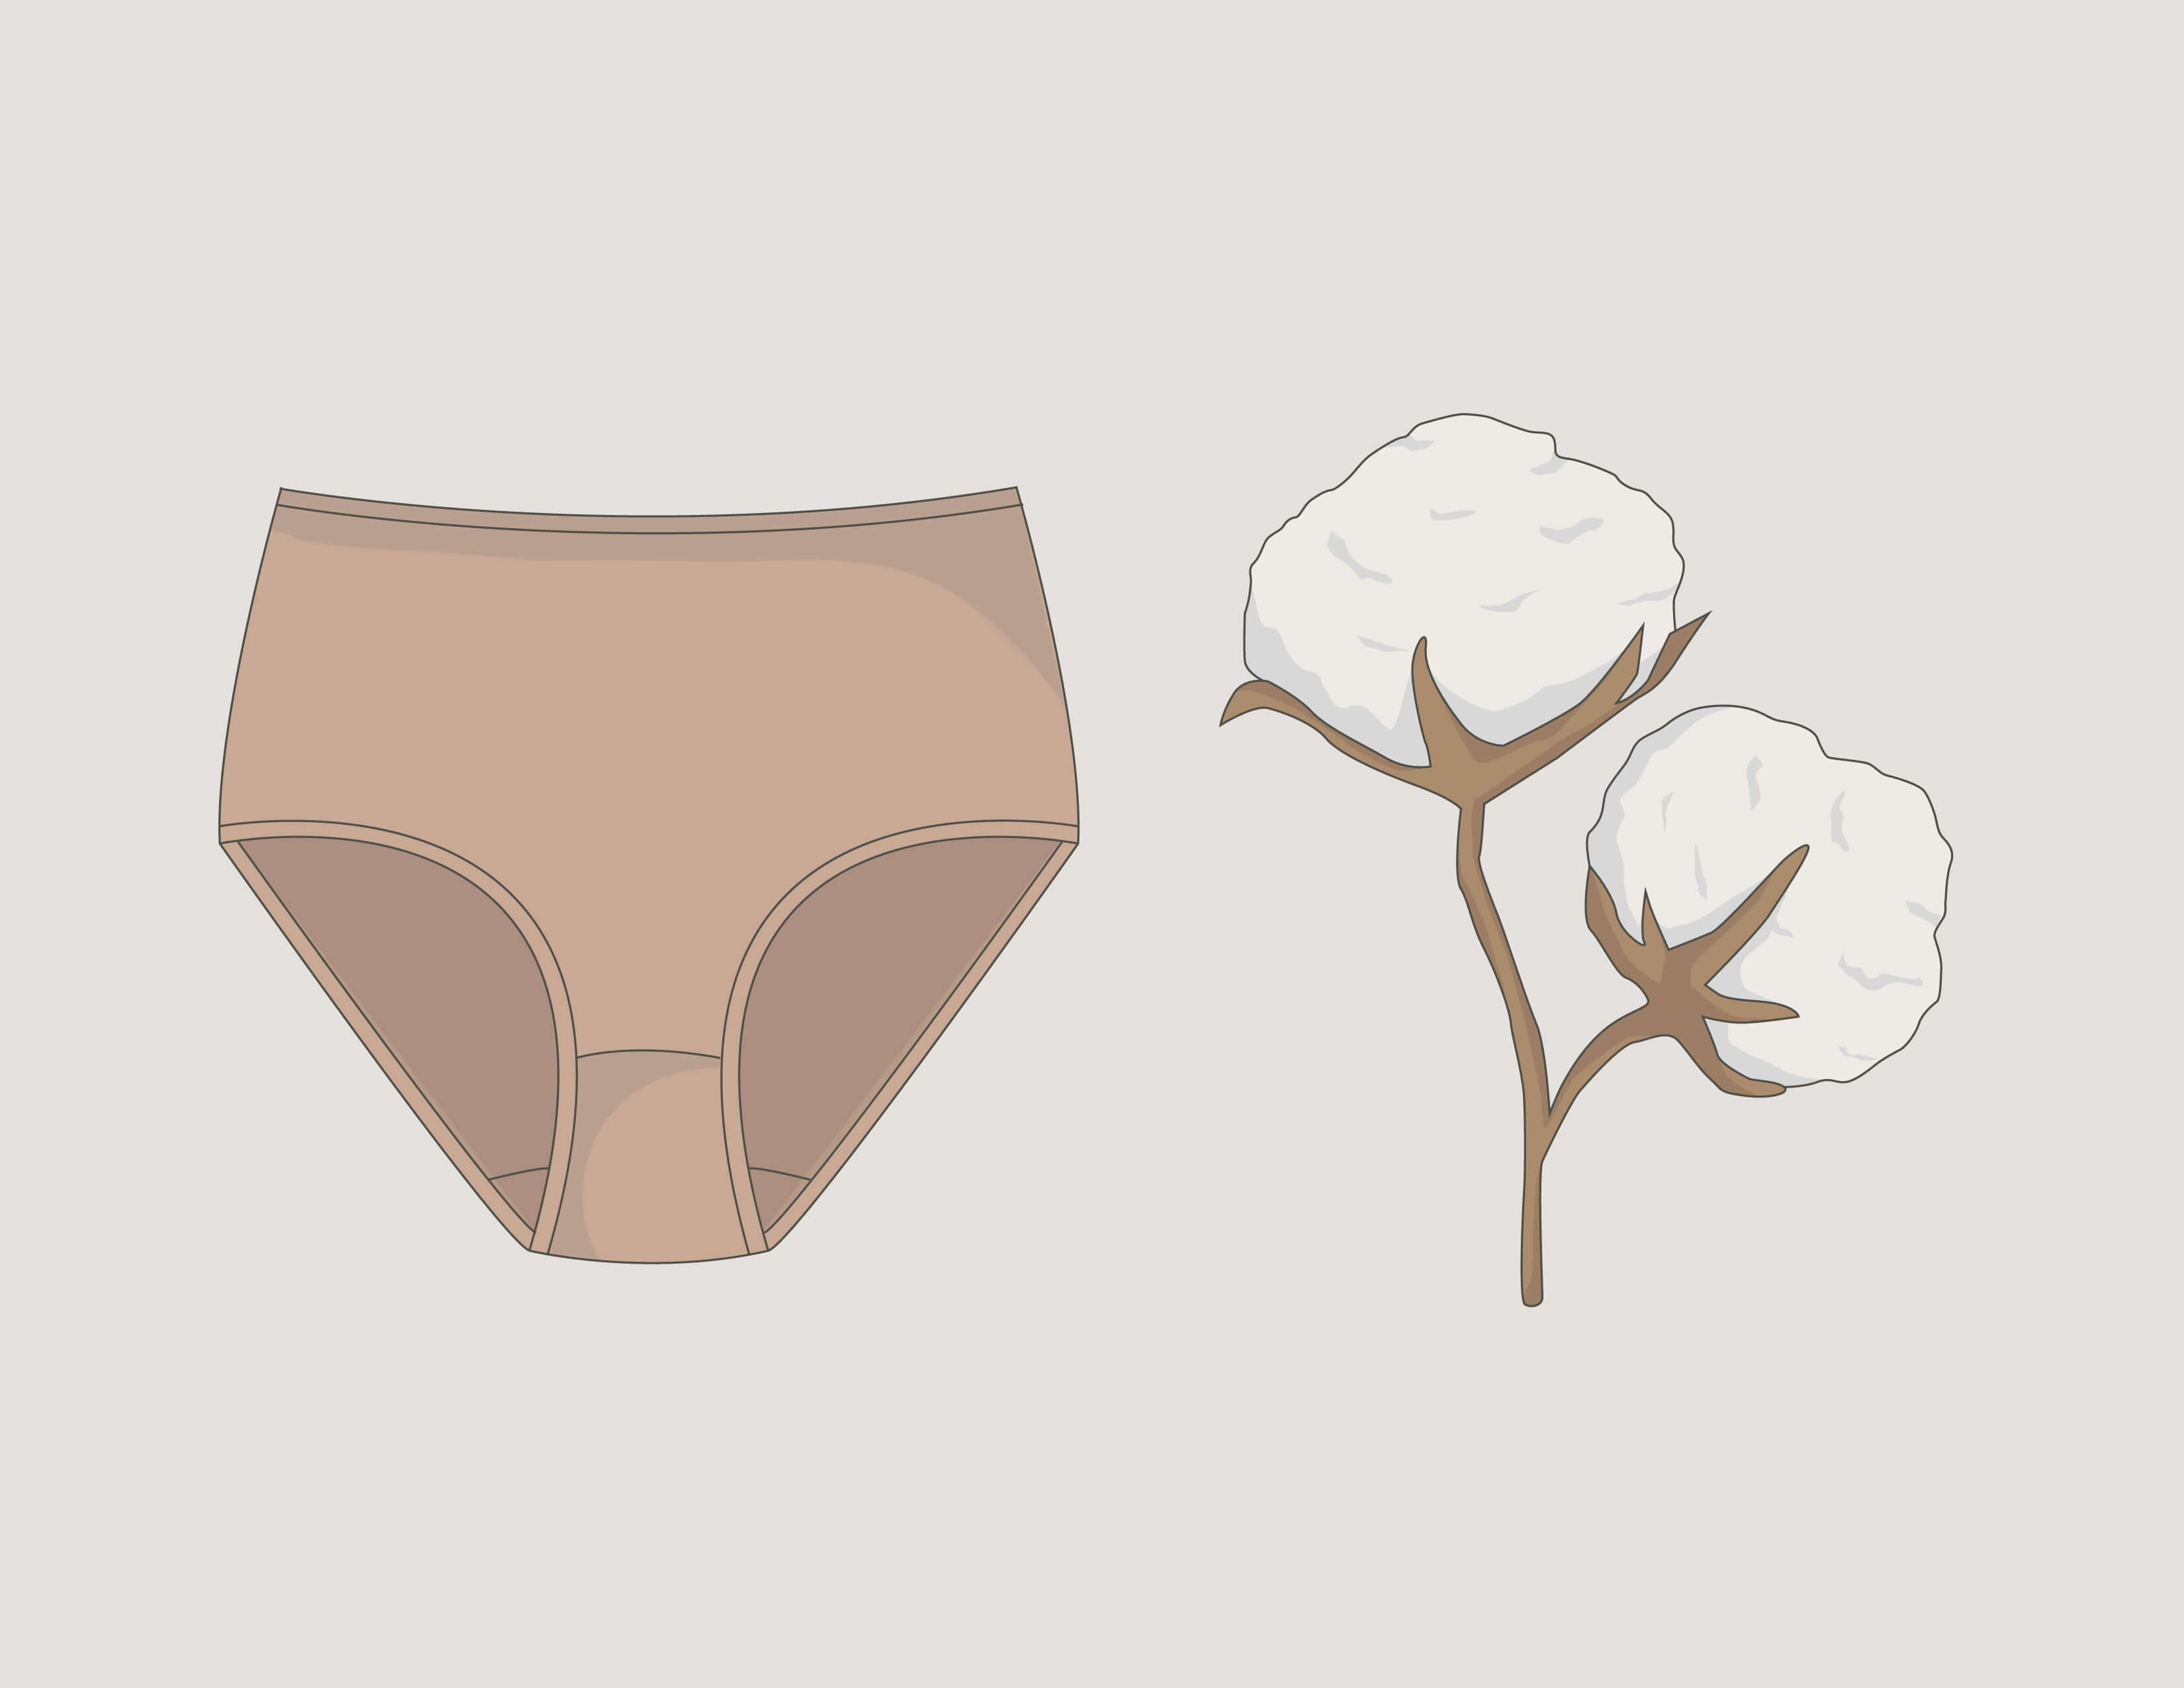 How Do Period Panties Work?